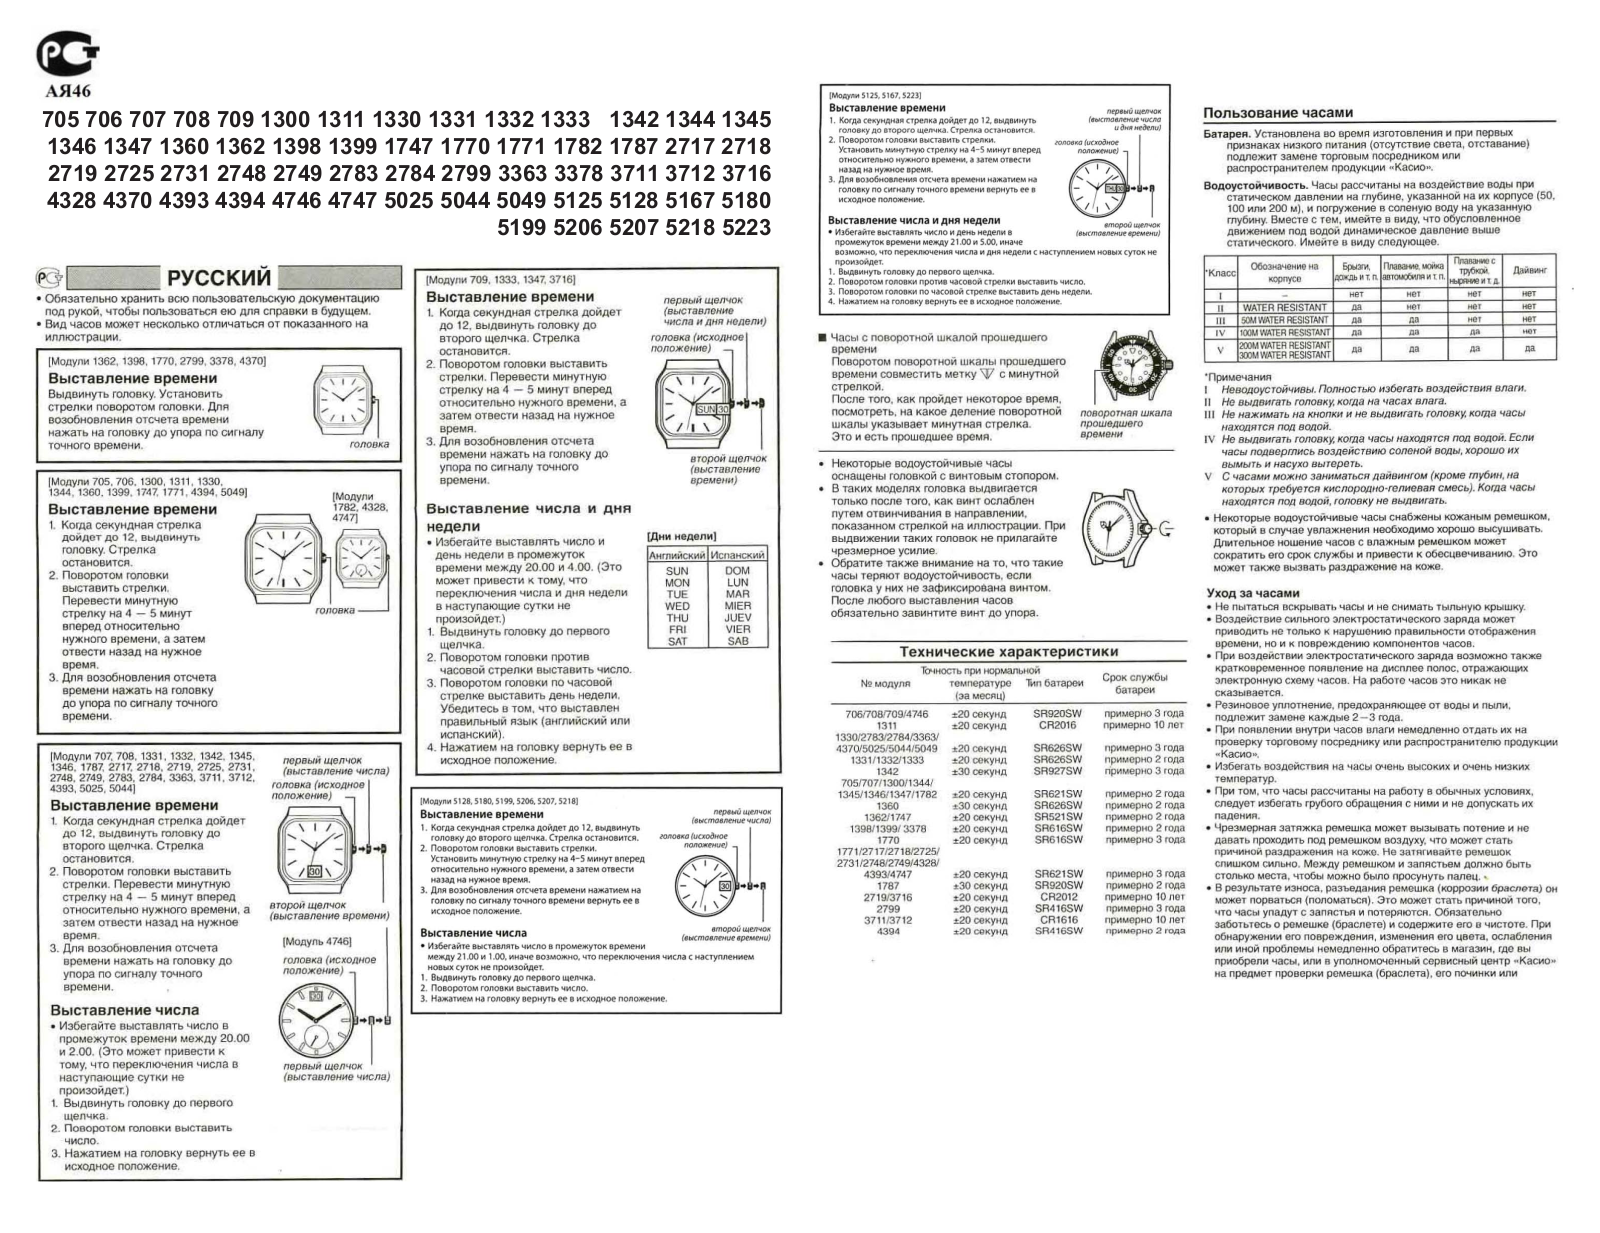 Casio EF-130D-1A4 User Manual